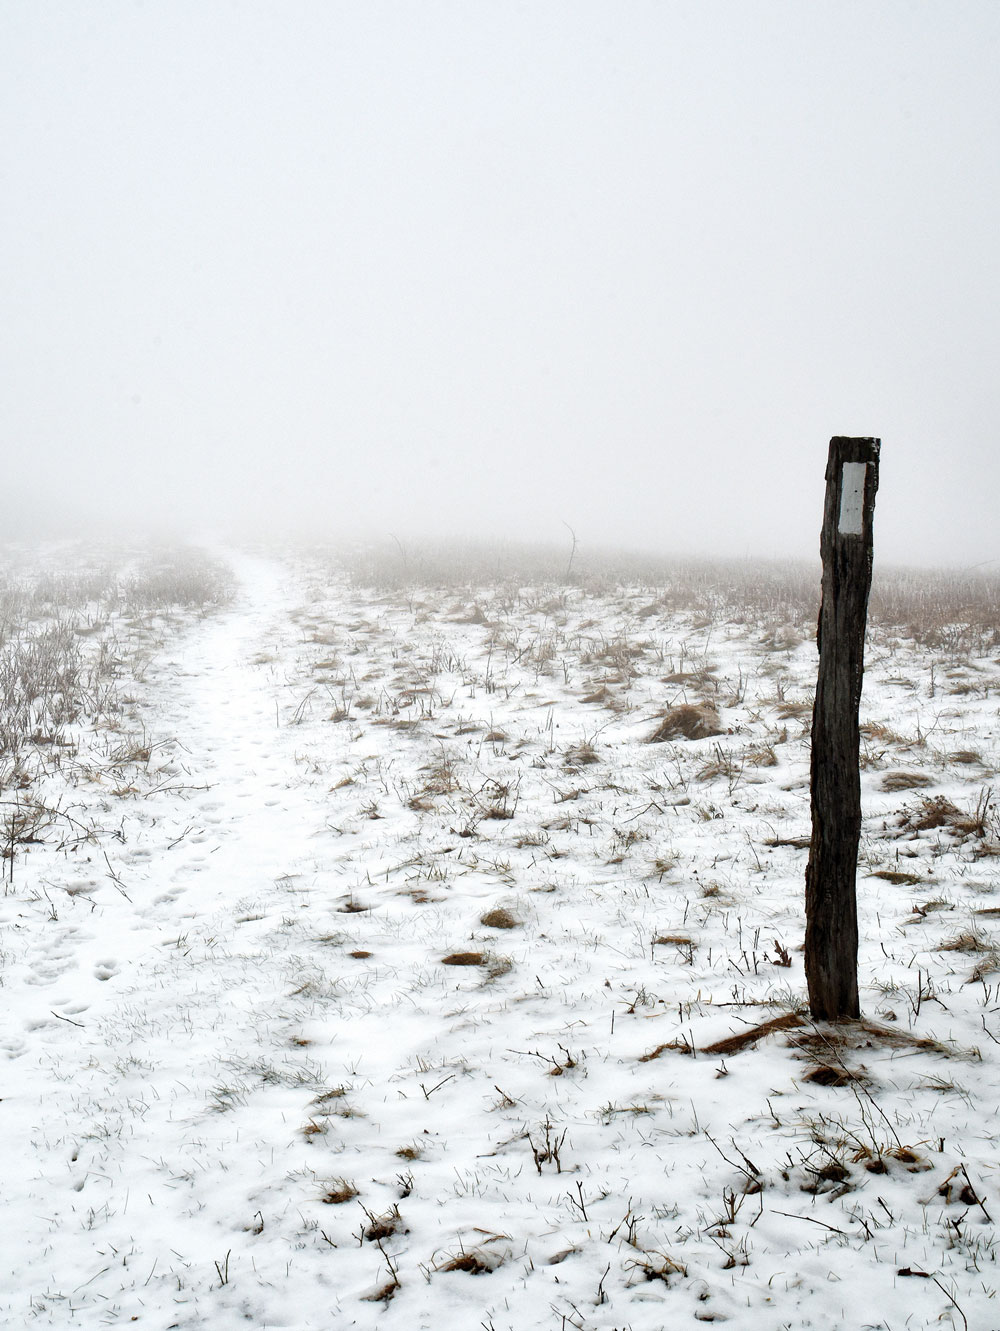 snowy path